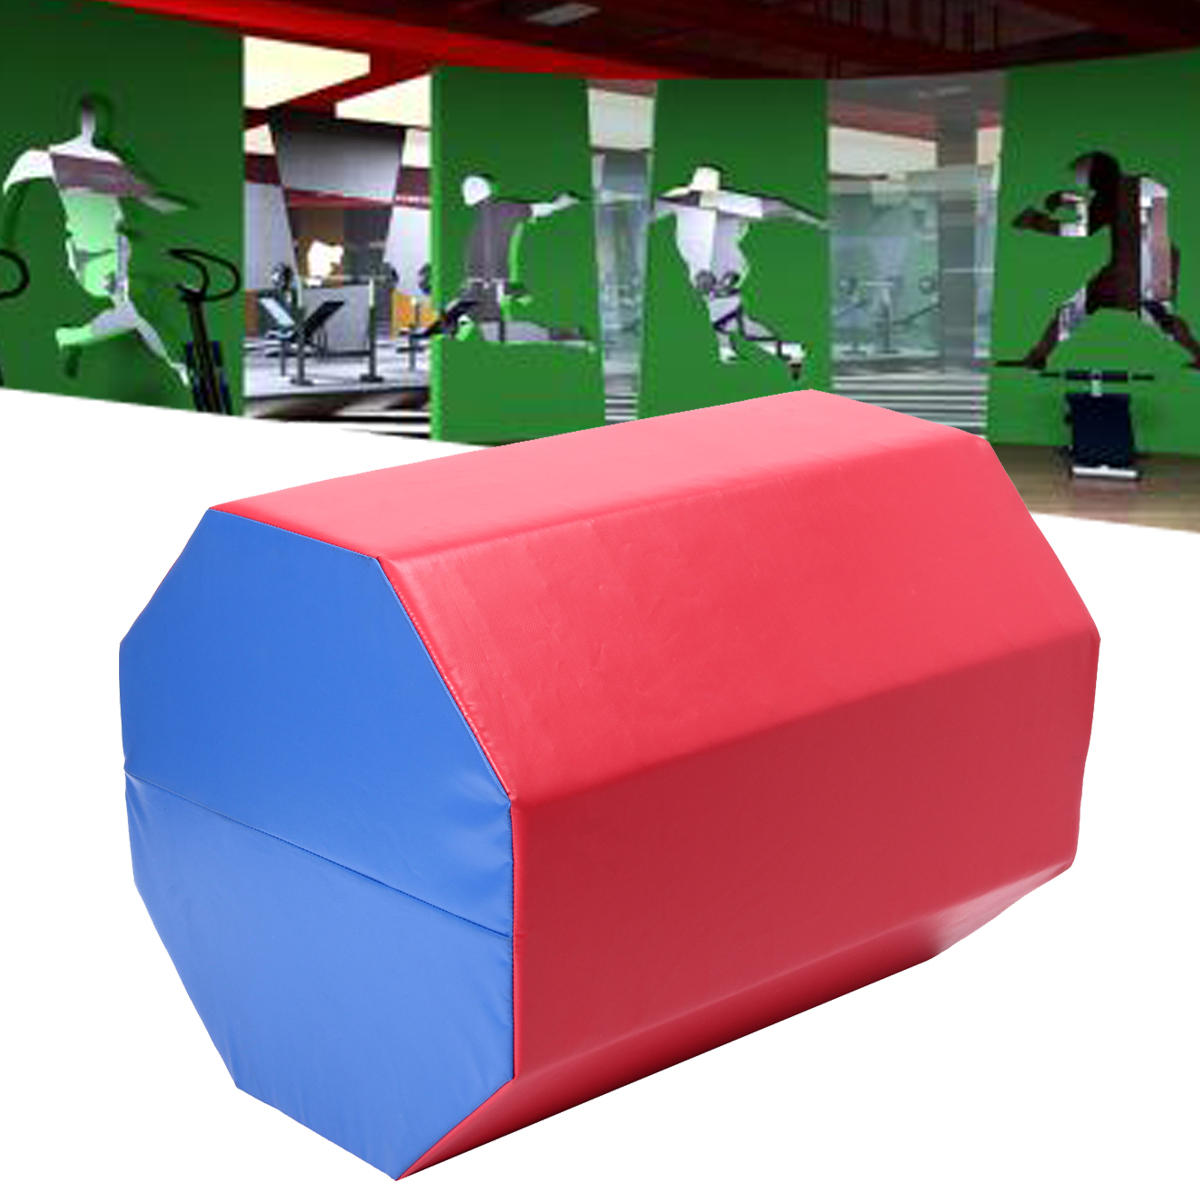 23,6 × 23,6 × 30,3 cala Ośmioboczny Skok Pomiń Ćwiczenia gimnastyczne Sport Ćwiczenie Pad Air Track Mat